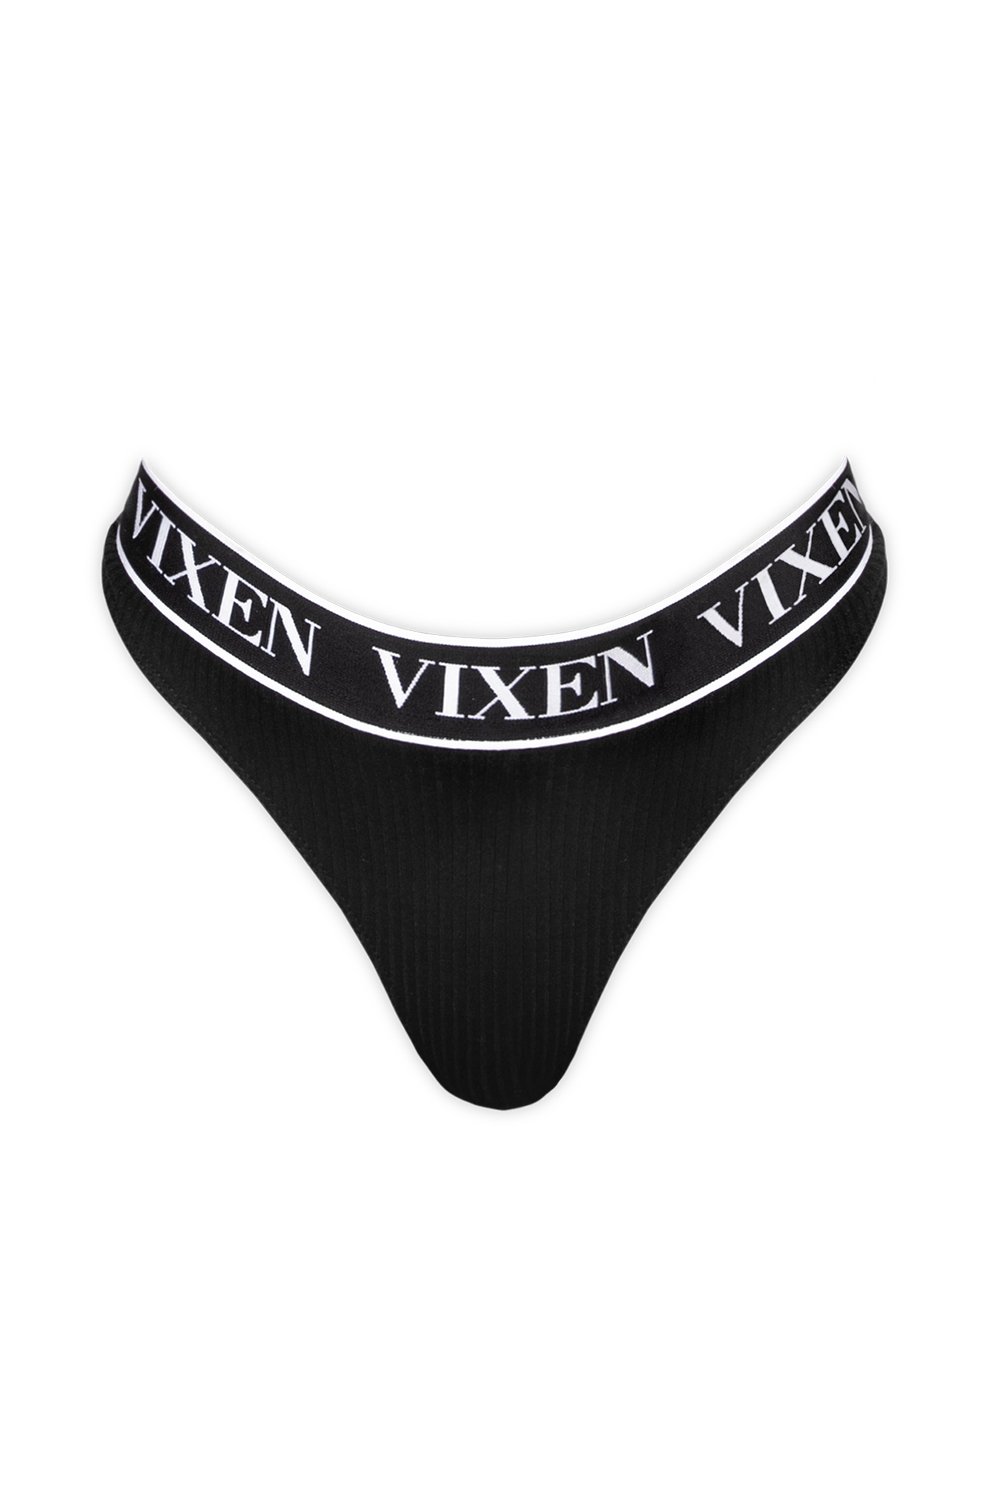 Vixen Icon Thong Panty (Noir)